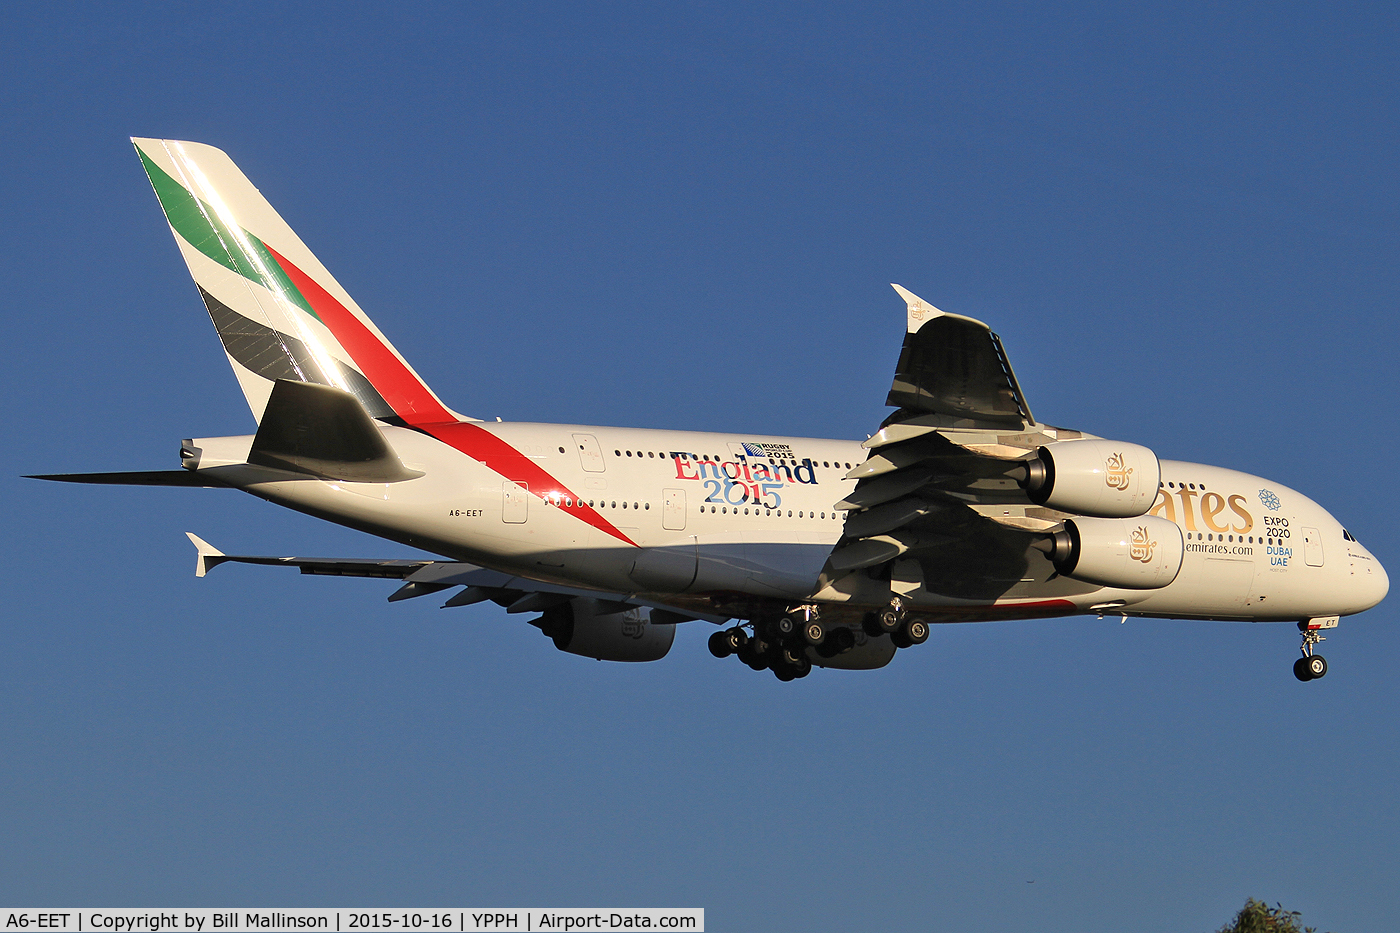 A6-EET, 2013 Airbus A380-861 C/N 142, finals to 21 as EK420